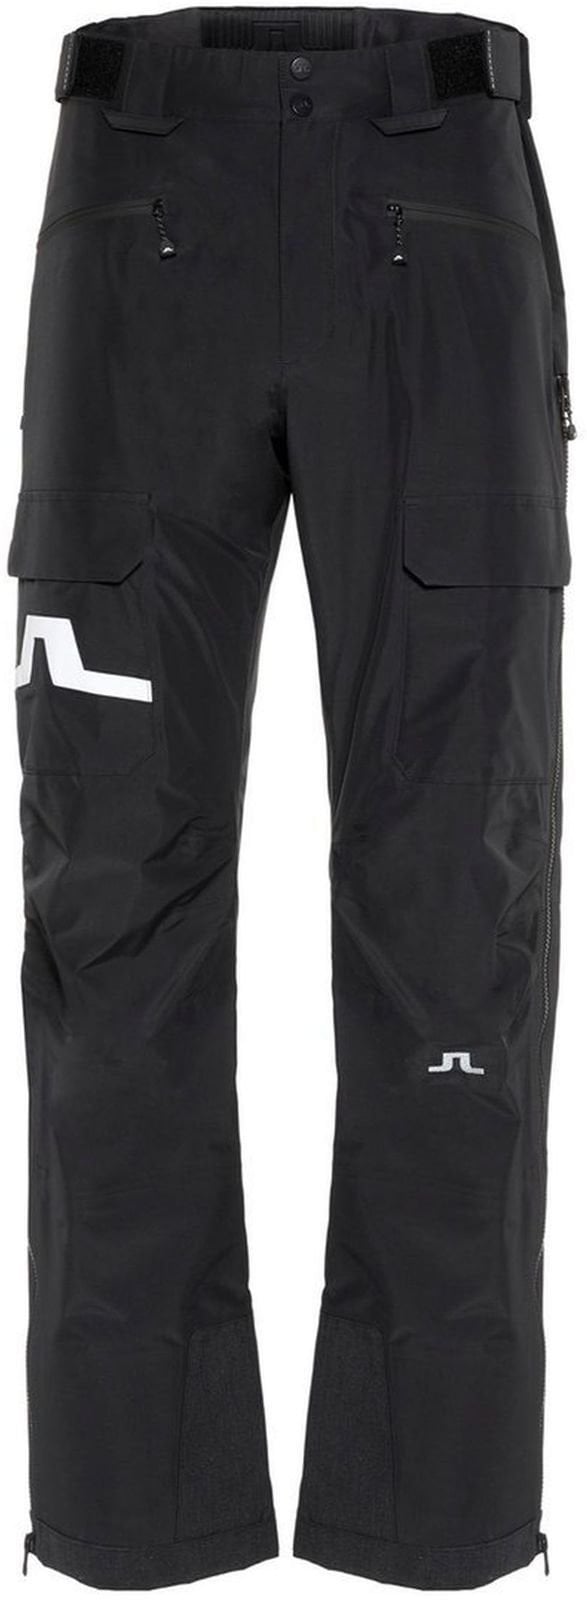 Pantalons de ski J.Lindeberg Harper P 3L GoreTex Black XL